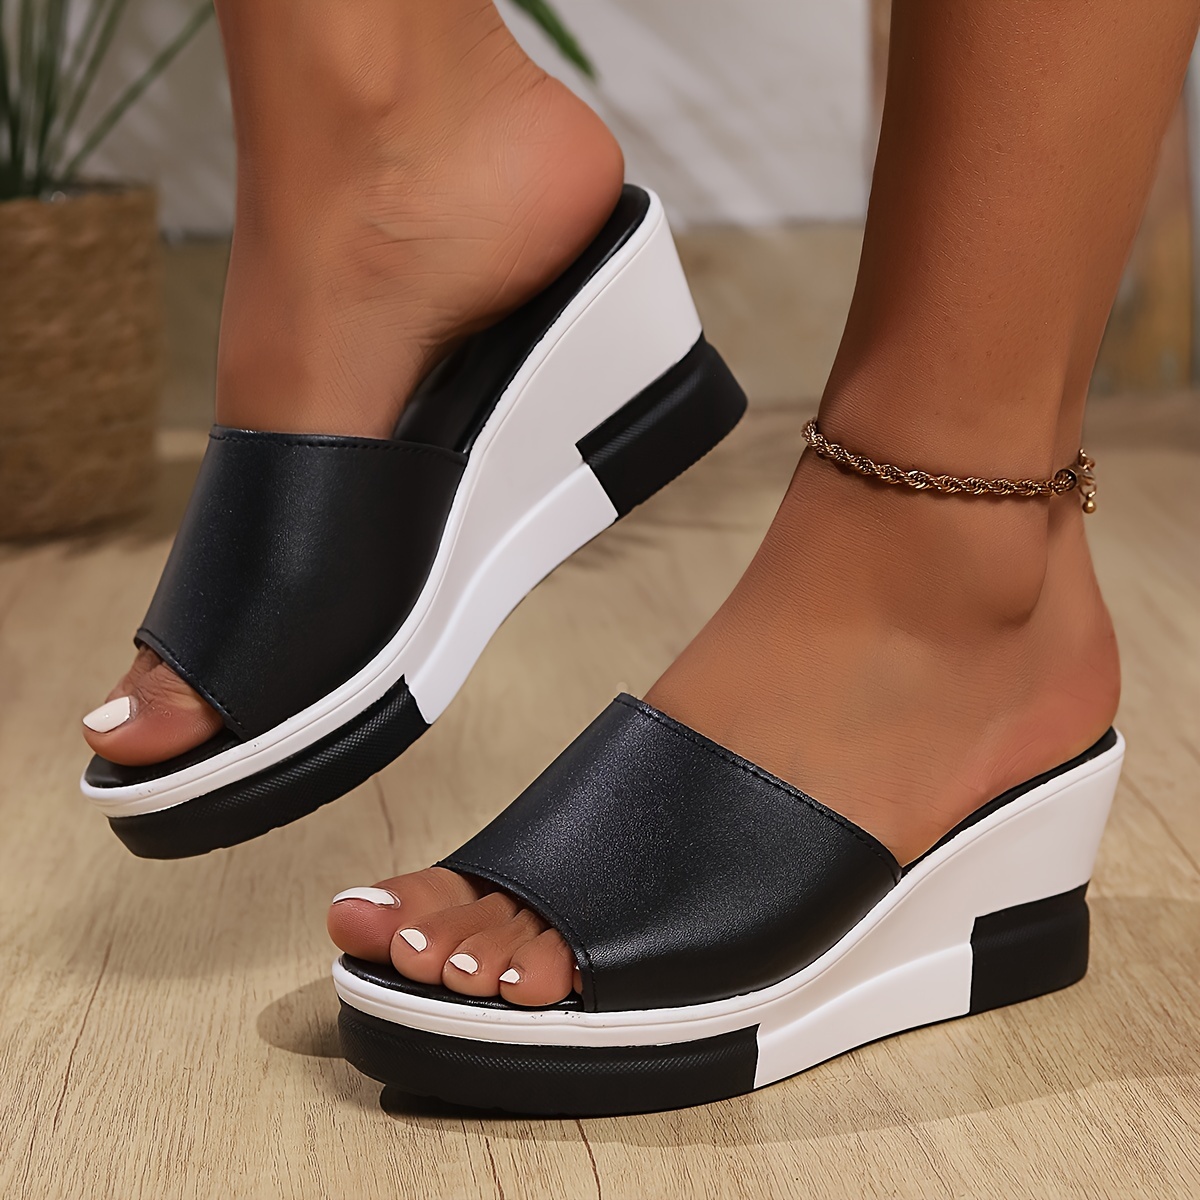 Women's Contrast Color Sandals